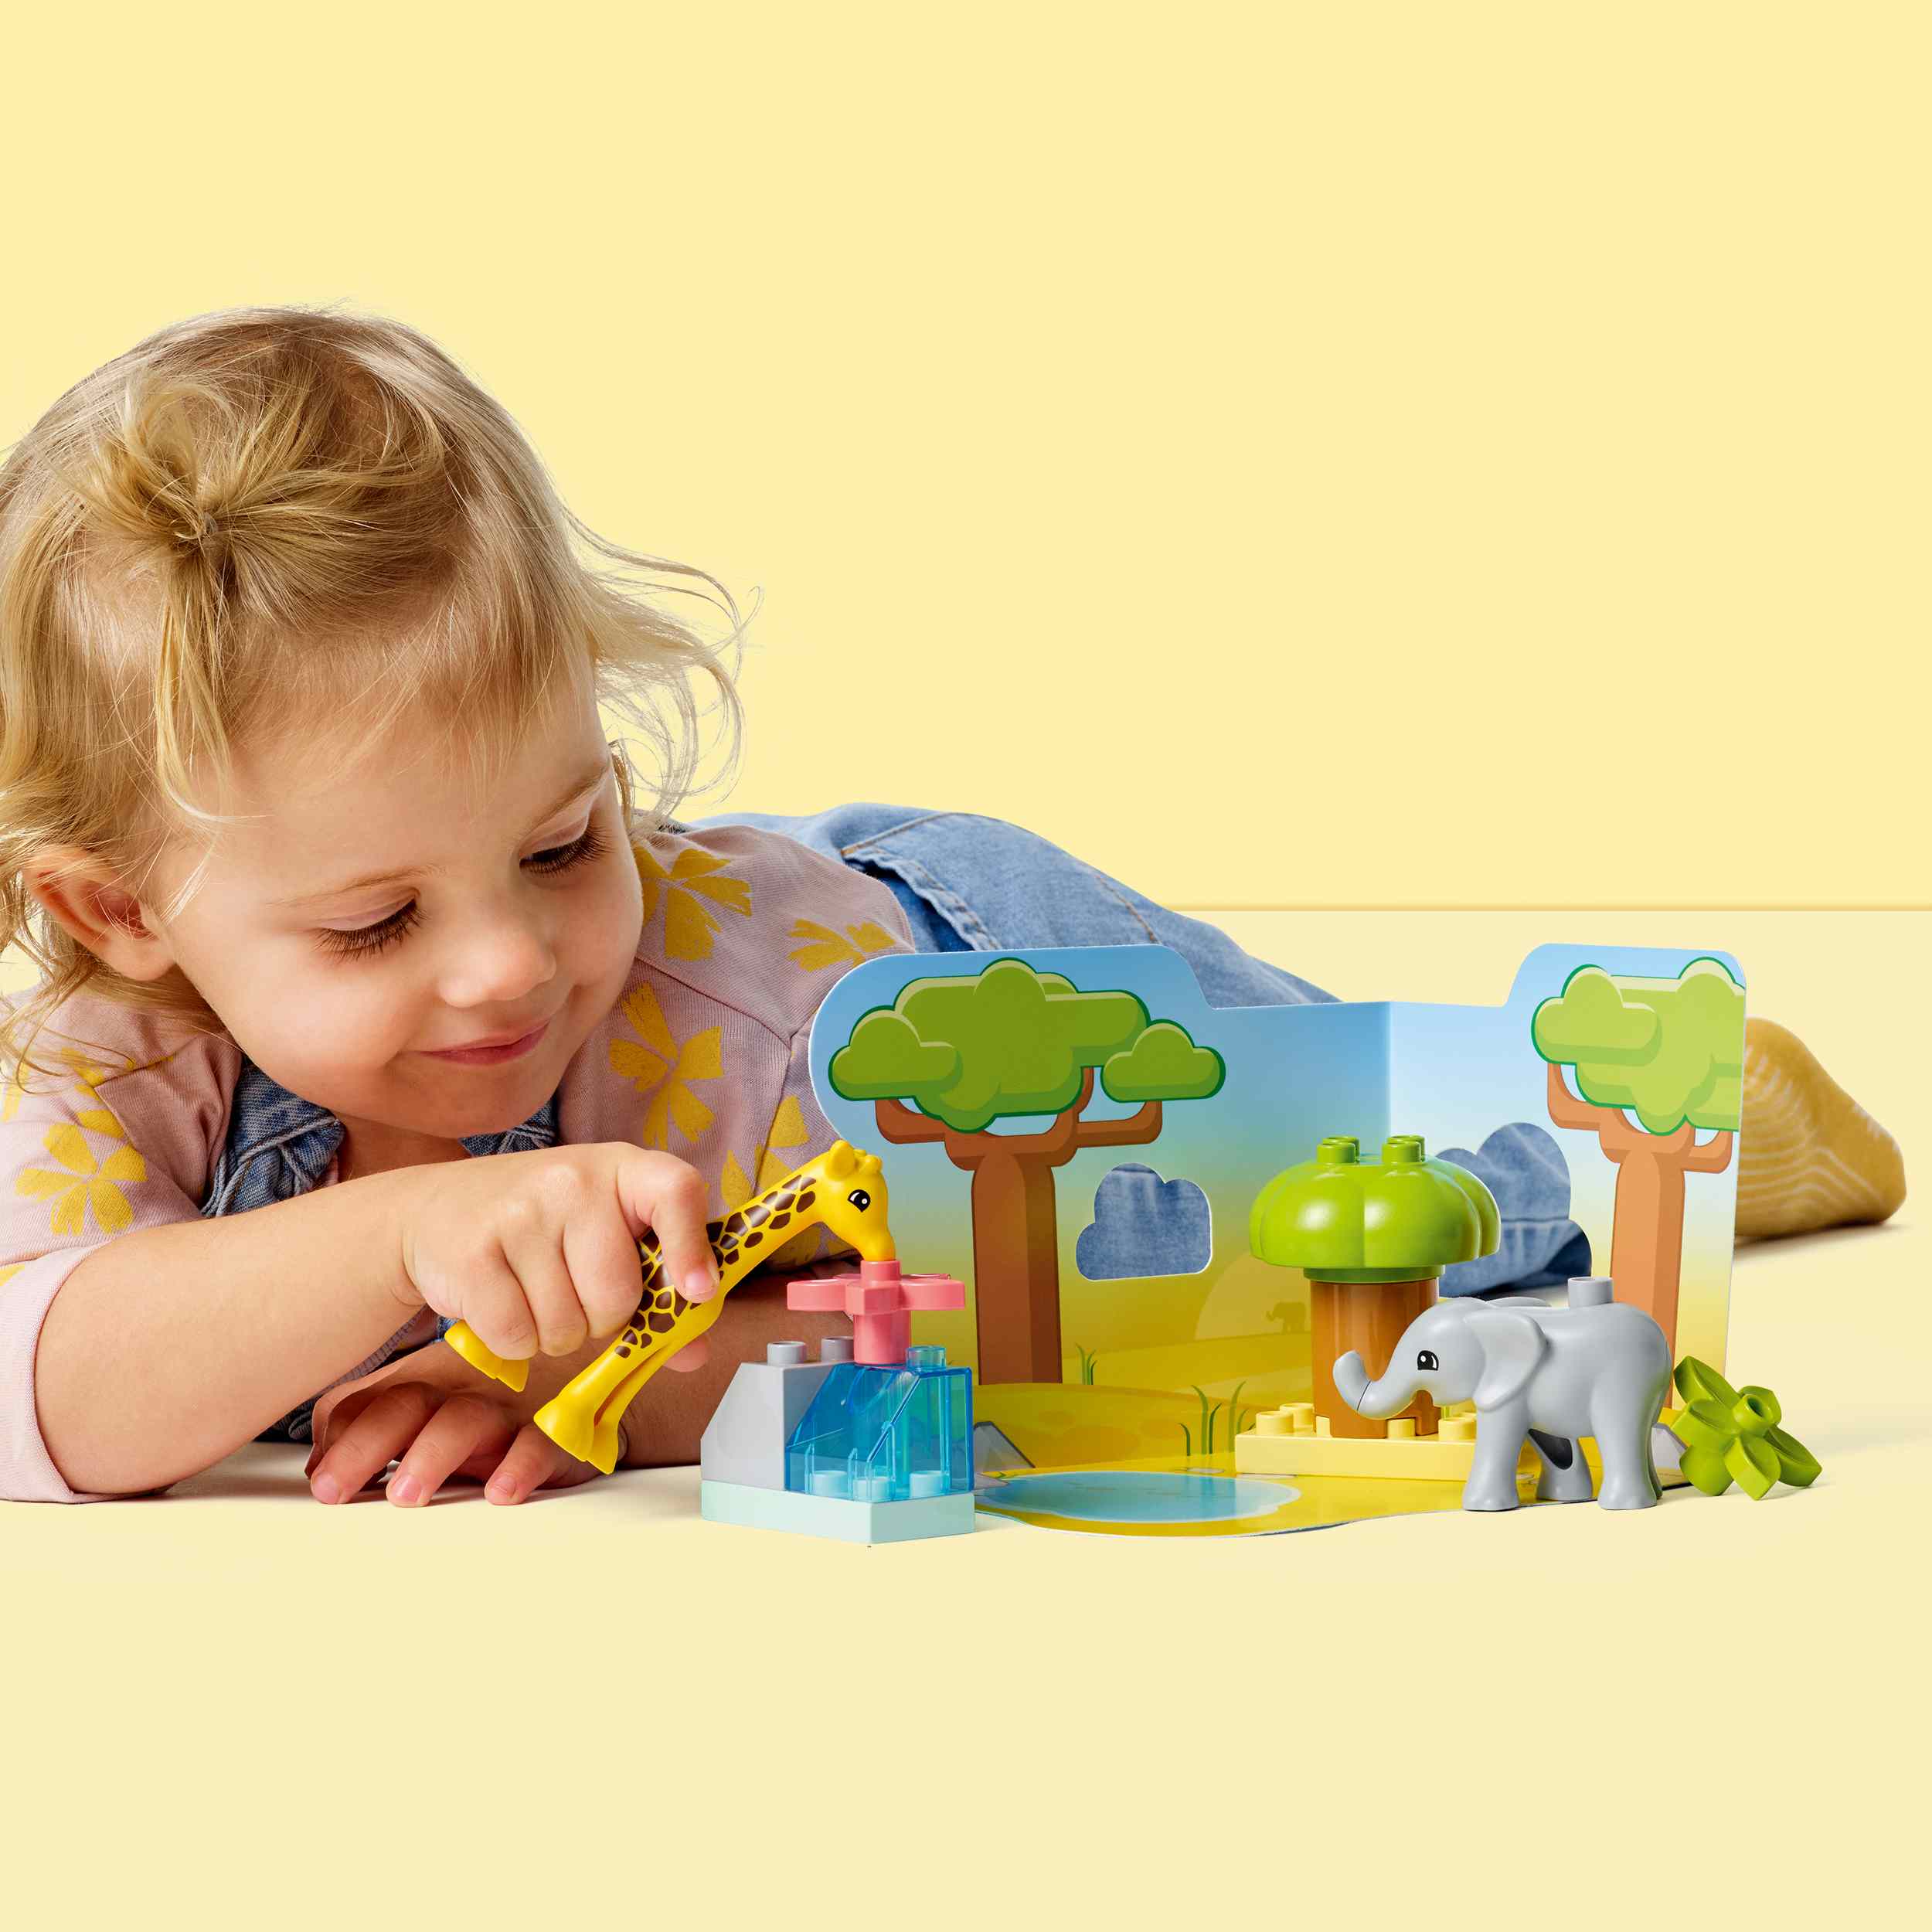 Lego duplo 10971 animali dell’africa, giochi educativi per bambini dai 2 anni con elefante giocattolo e tappetino da gioco - LEGO DUPLO, Lego